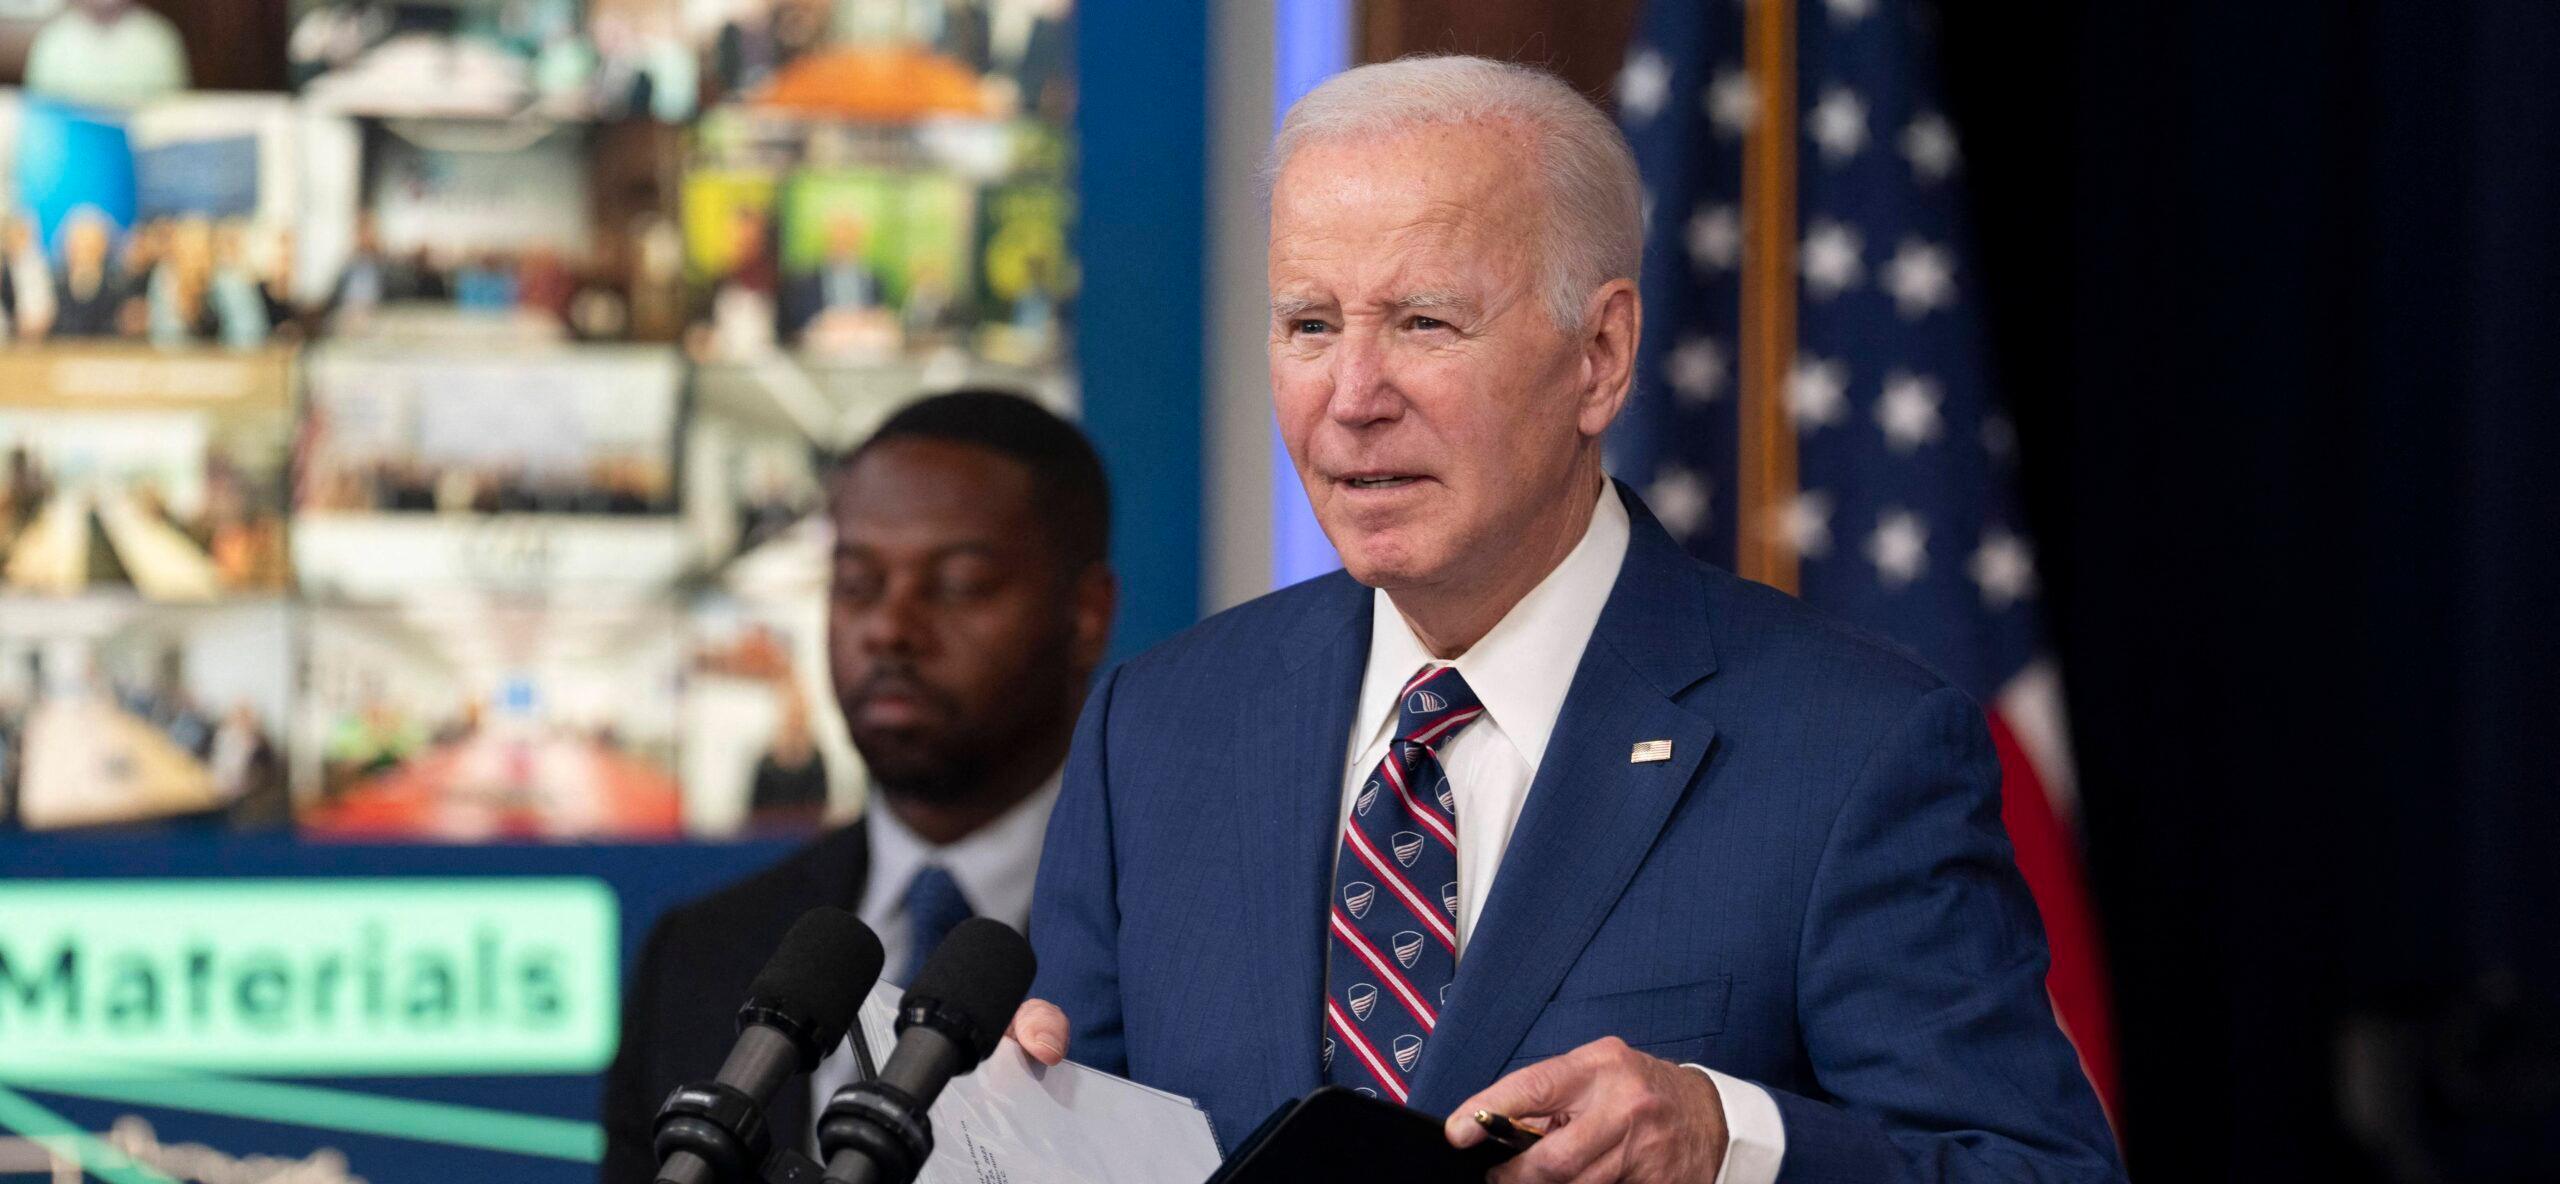 President Joe Biden Halts Speech Due To A Sudden 'Issue' That Arose